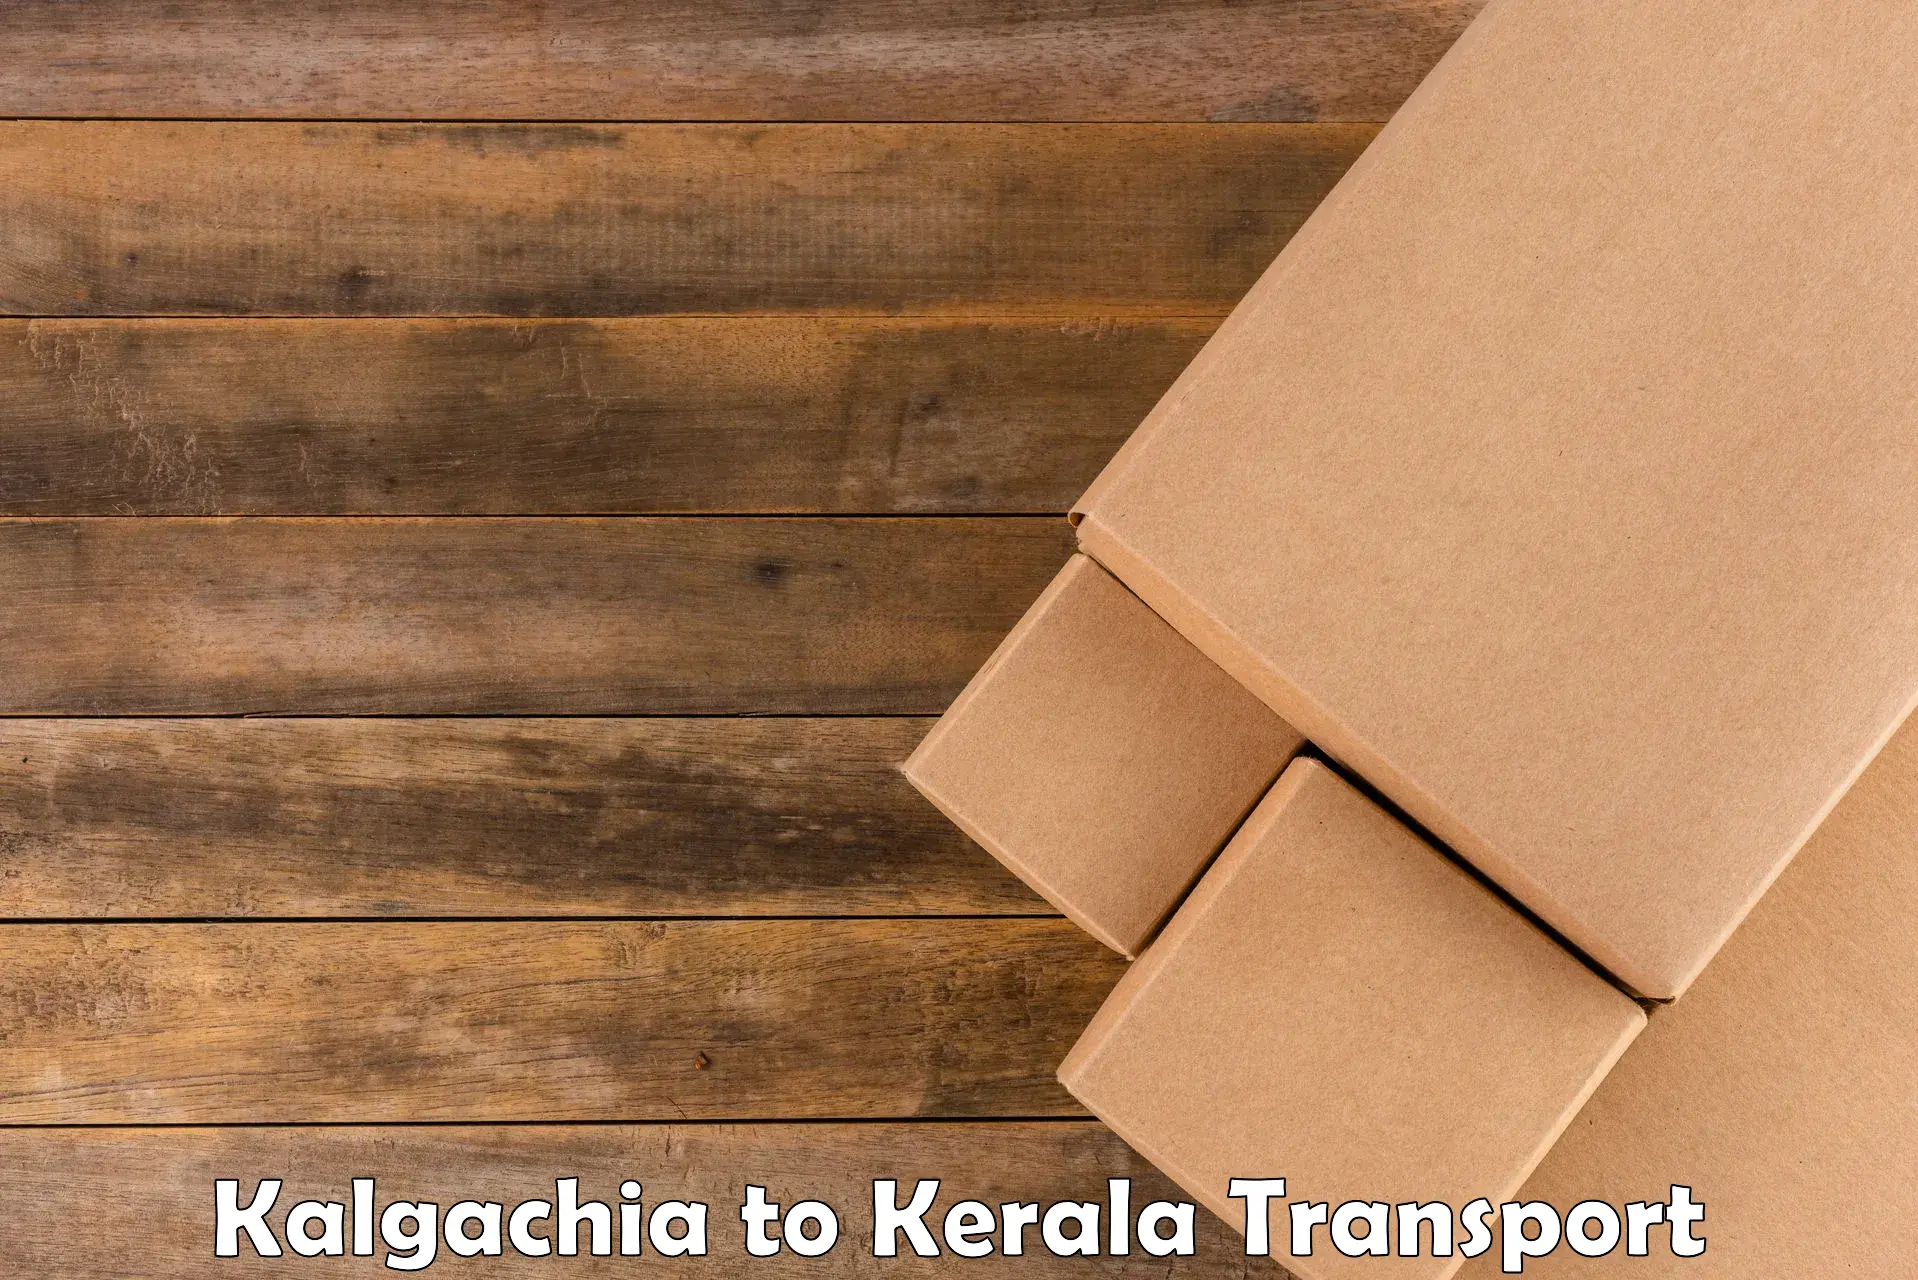 International cargo transportation services Kalgachia to Kollam